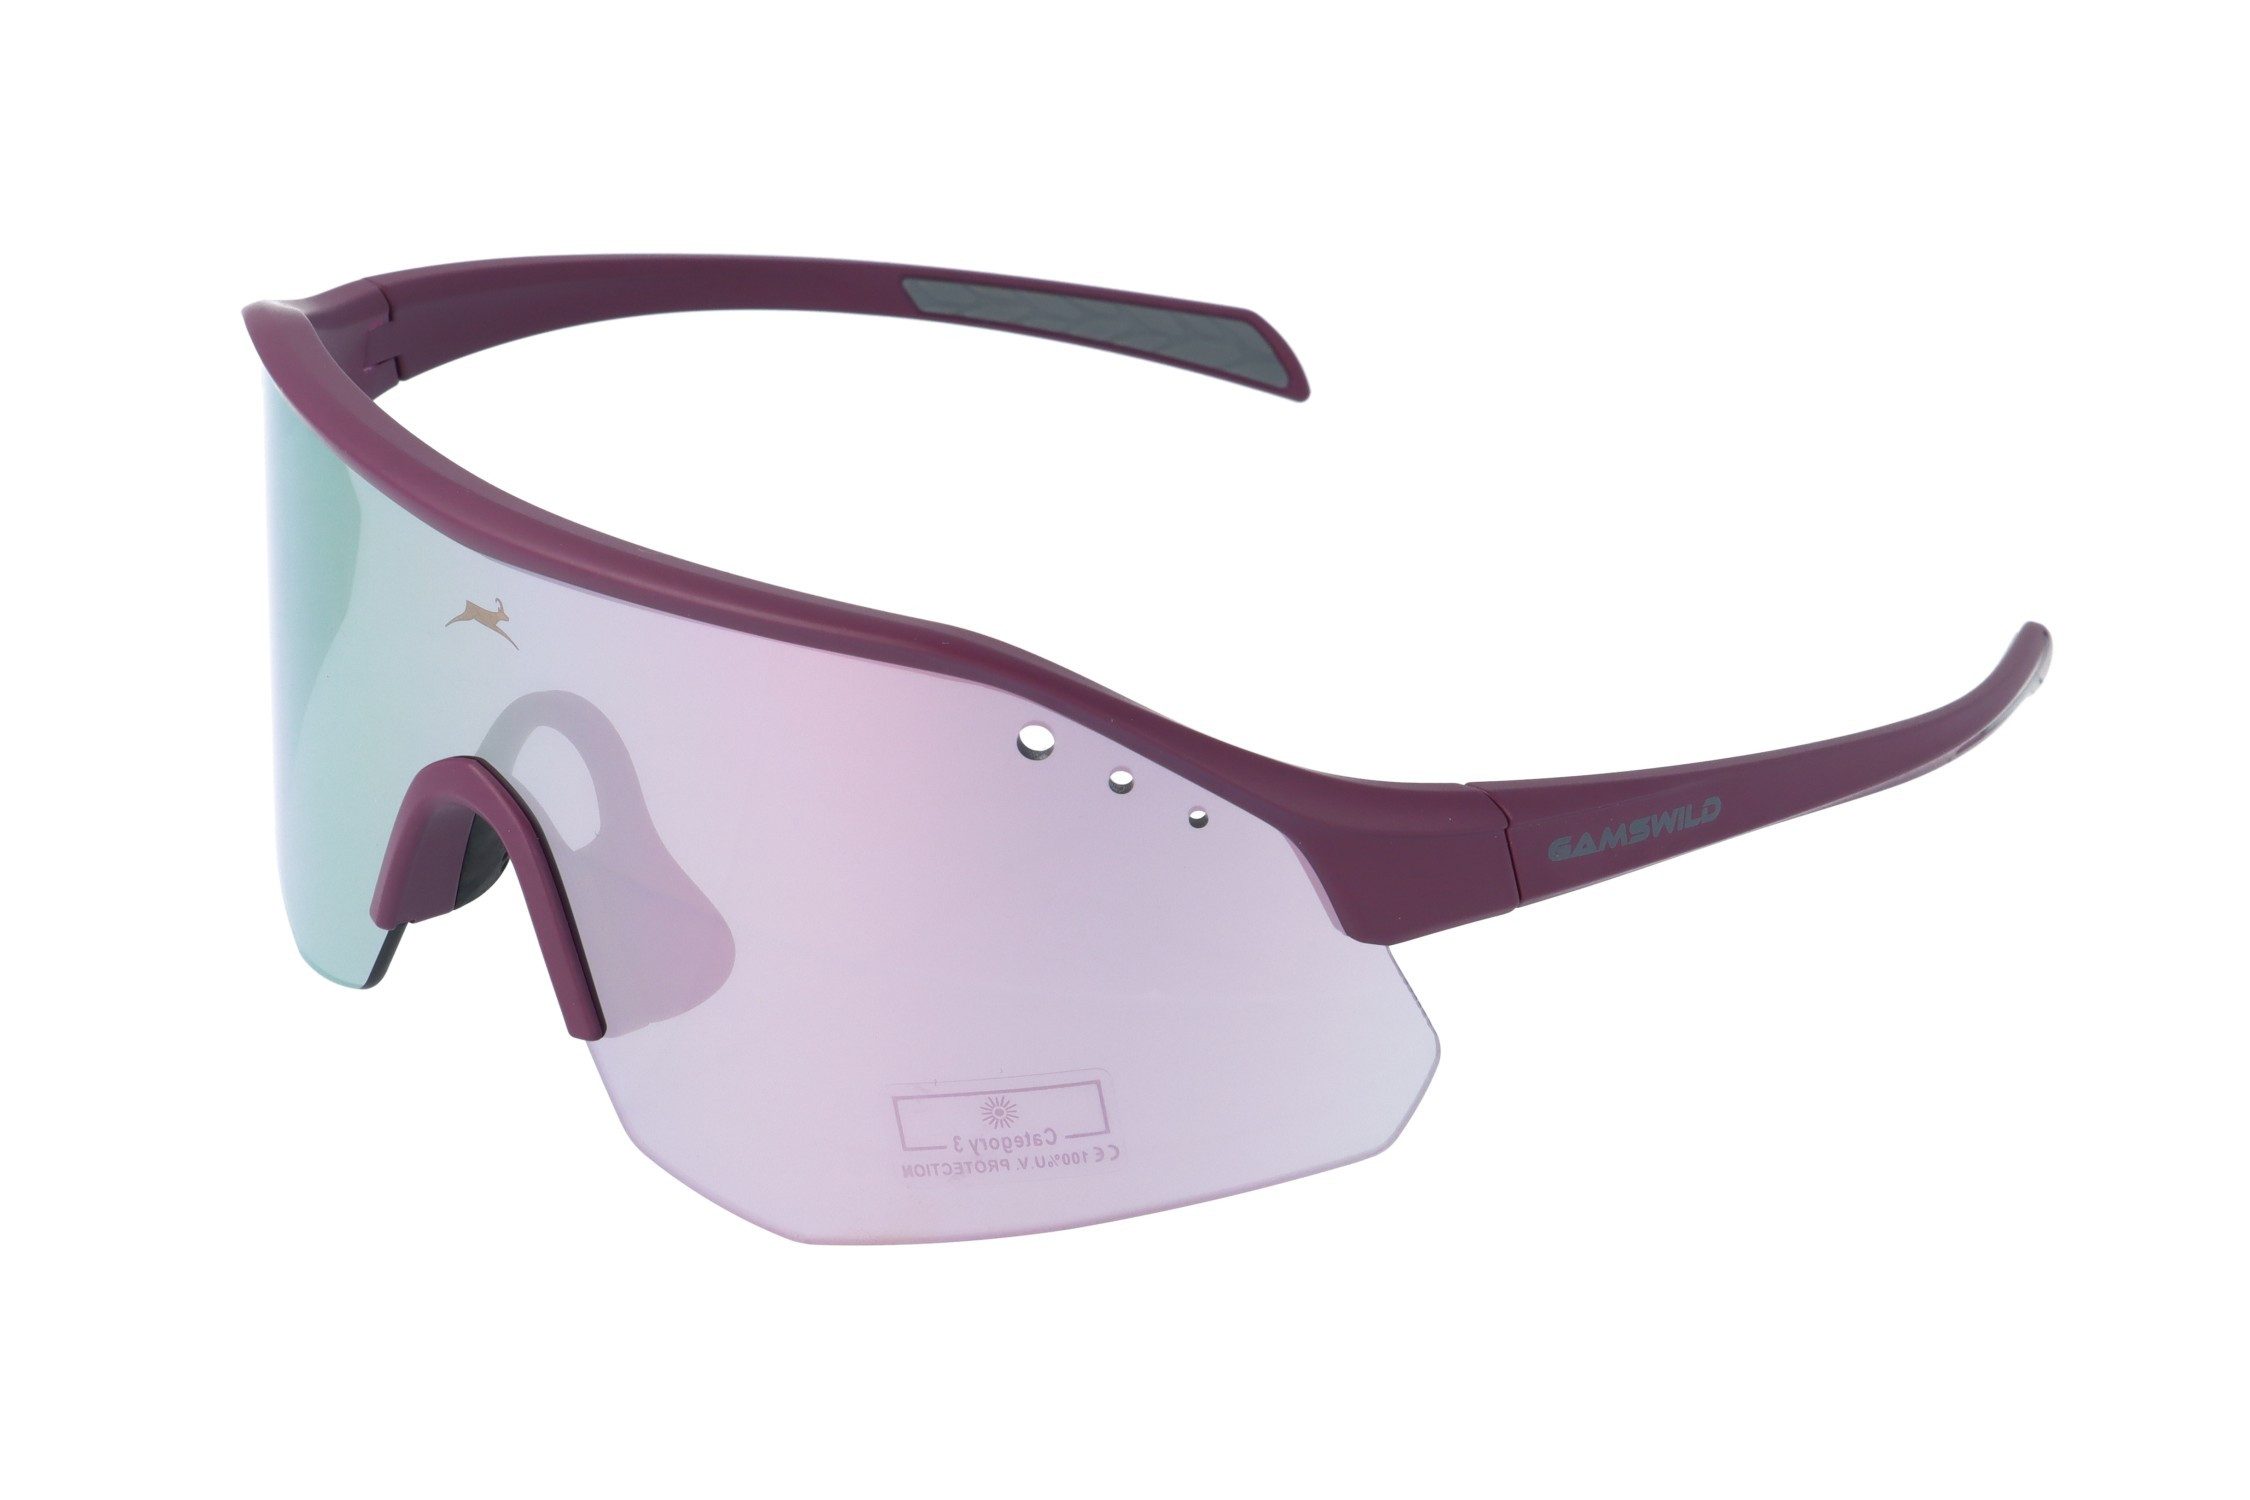 Gamswild Monoscheibensonnenbrille UV400 Sonnenbrille Skibrille Fahrradbrille eng anliegend Sportbrille WS2140 Damen, Herren, roas, beere, olivgrün, grau